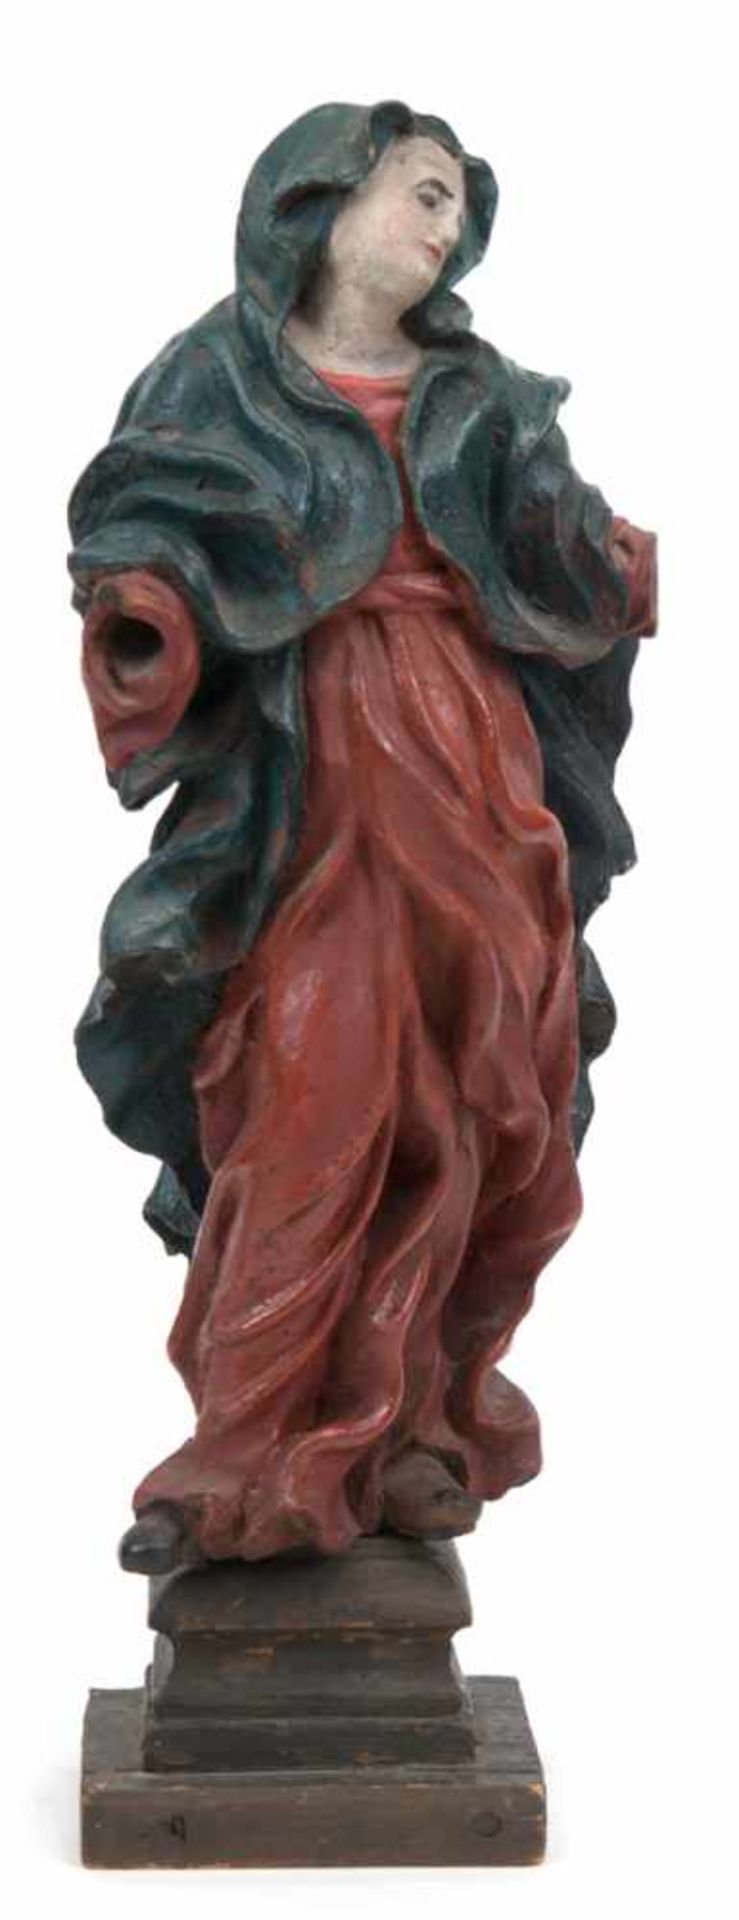 Alpenländische Heiligenfigur "Maria", um 1750, Holz, geschnitzt, farbig gefaßt, Hände fehlen,